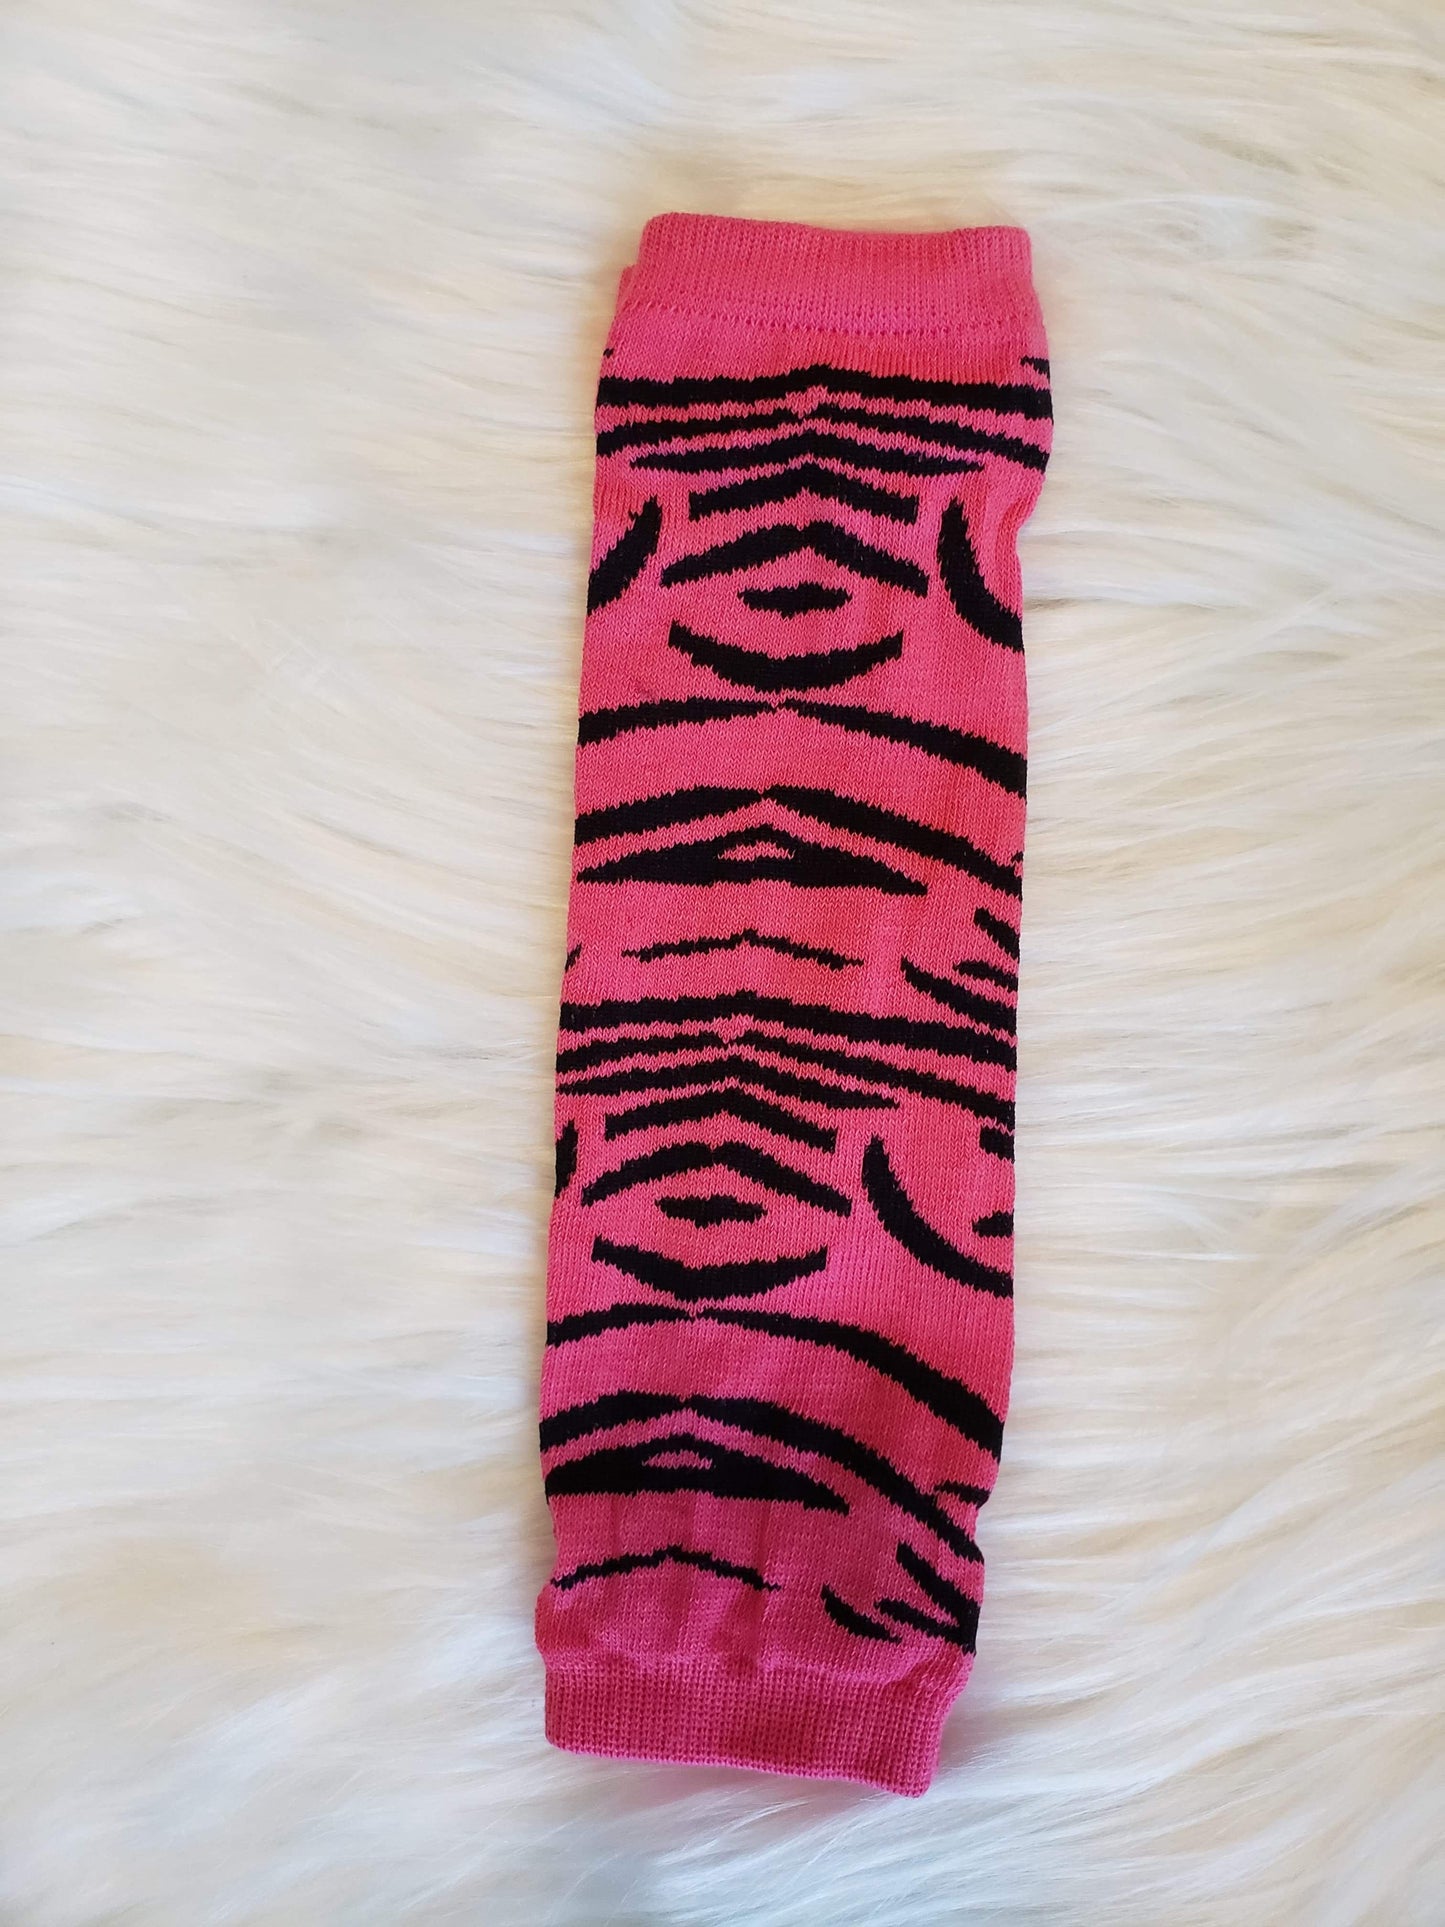 Pink zebra leg warmers